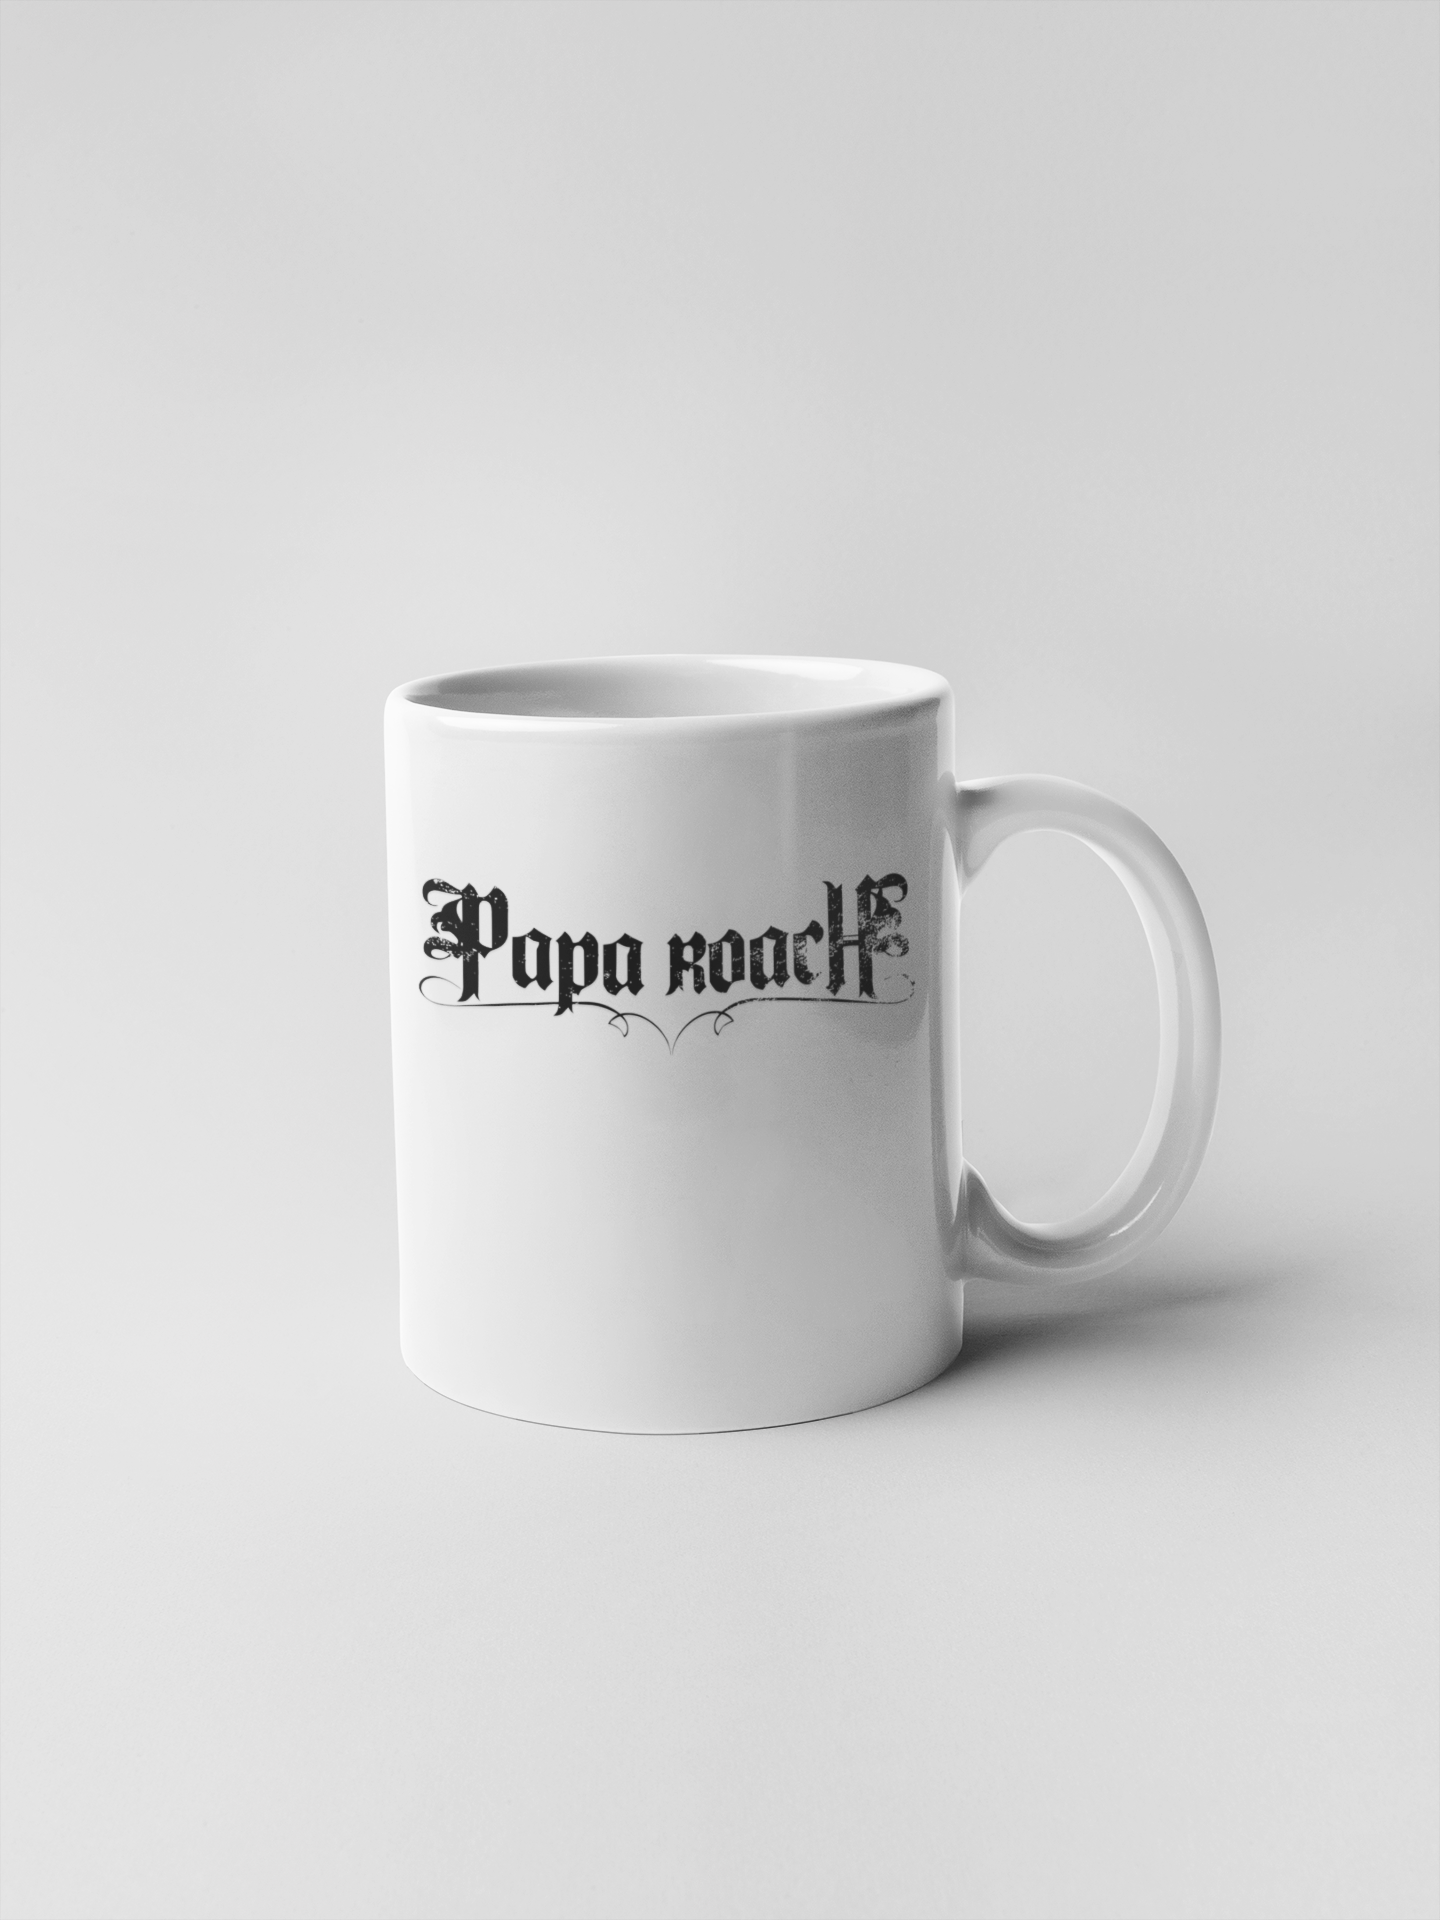 Papa Roach Logo Ceramic Coffee Mugs